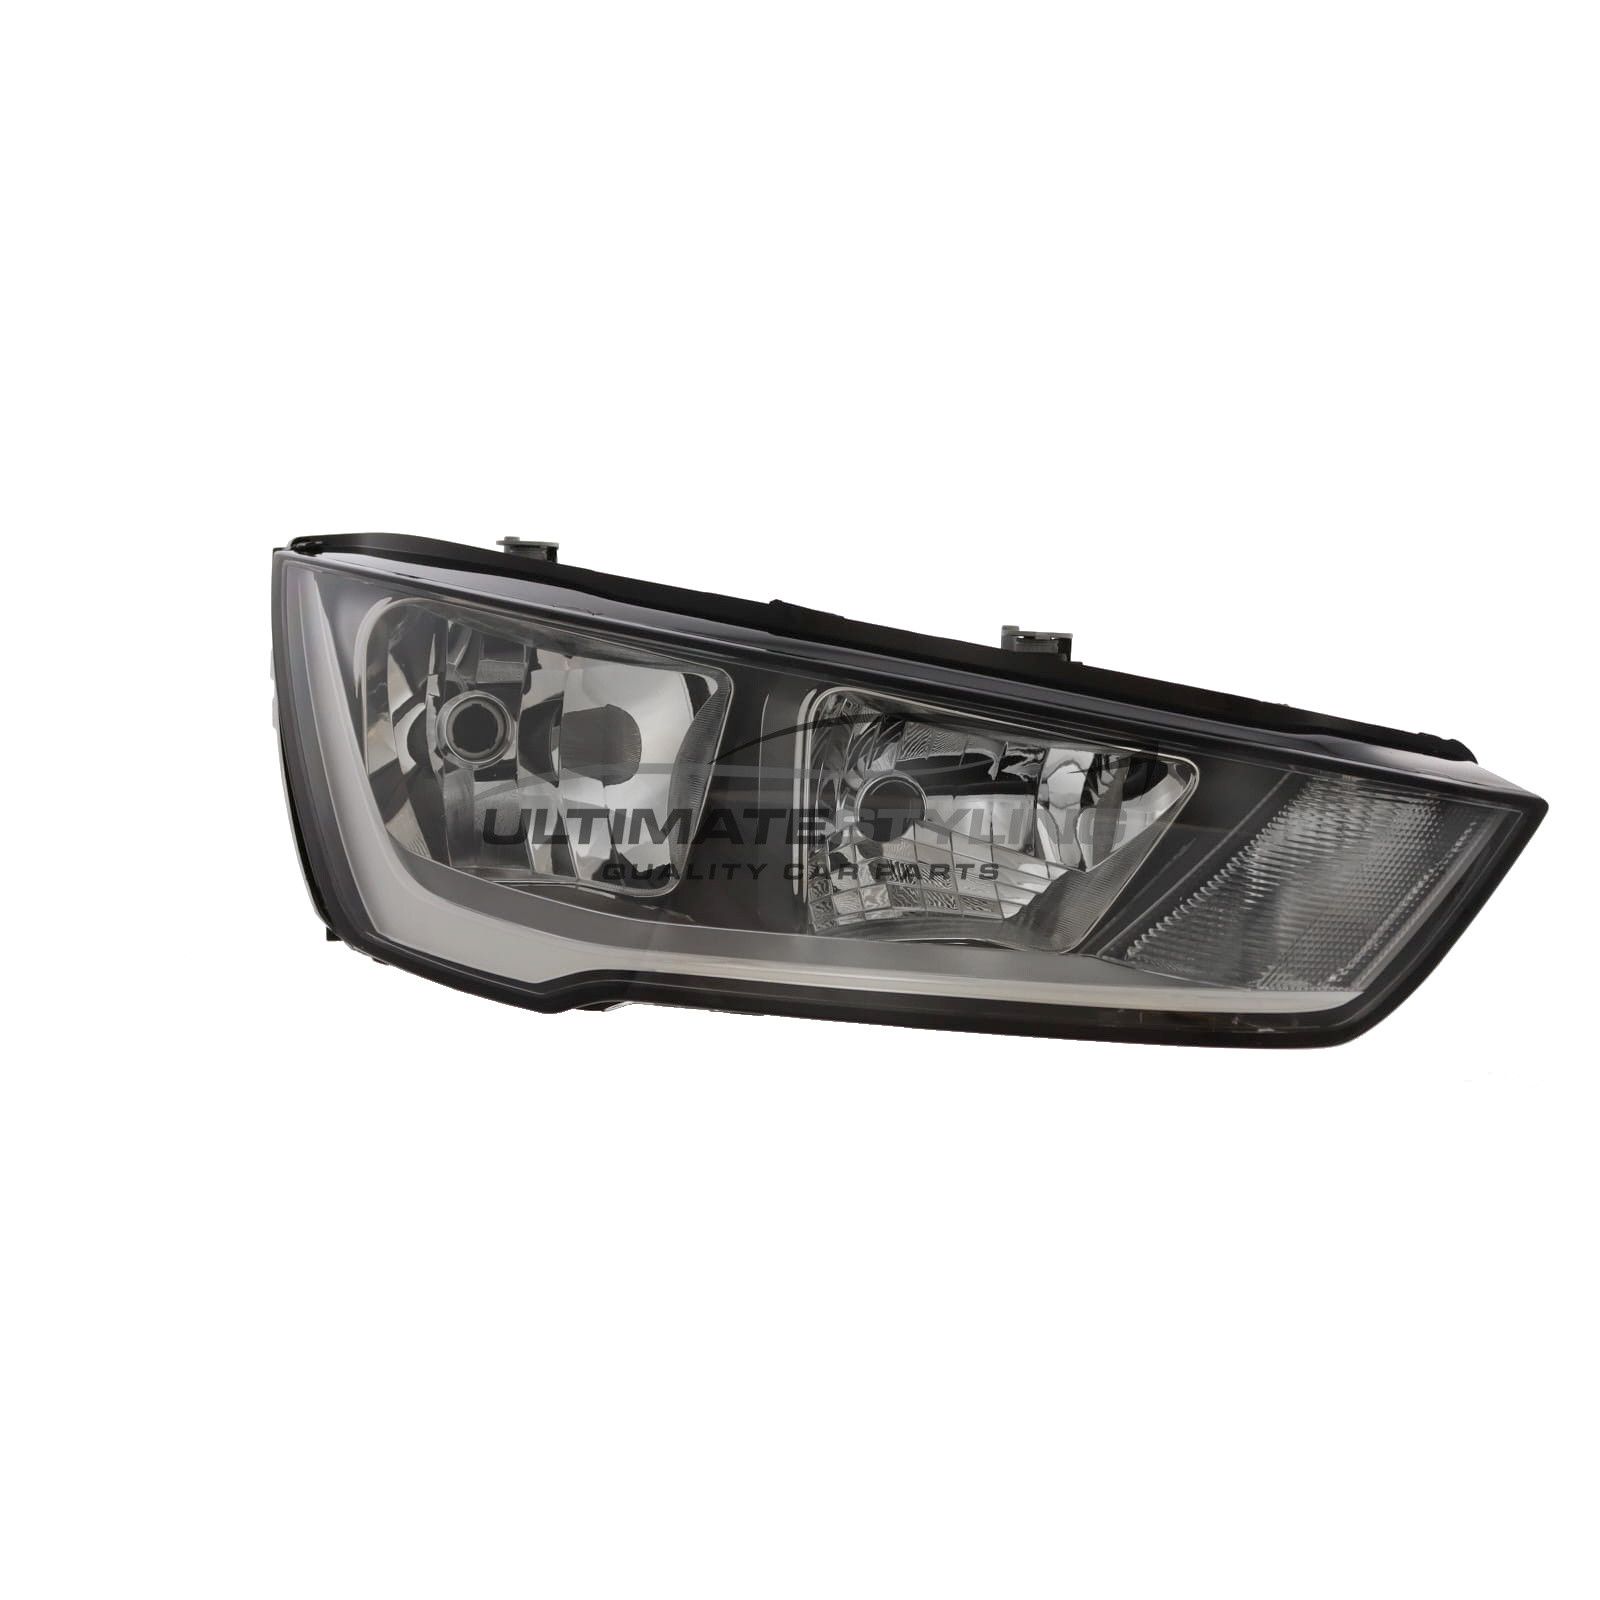 Headlight / Headlamp for Audi A1